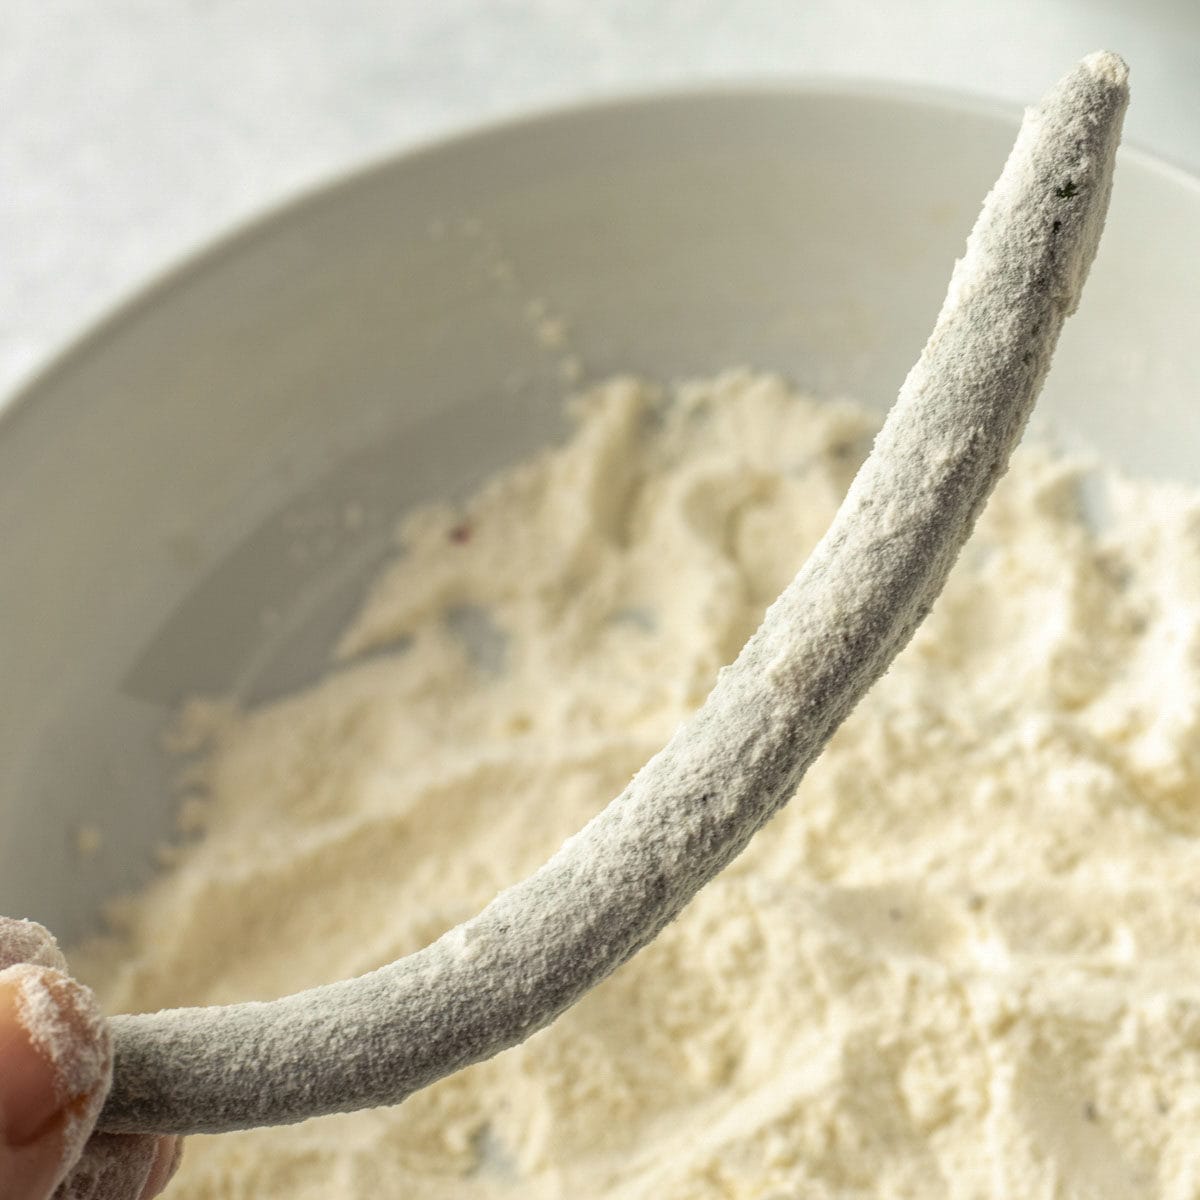 dipping bean in flour